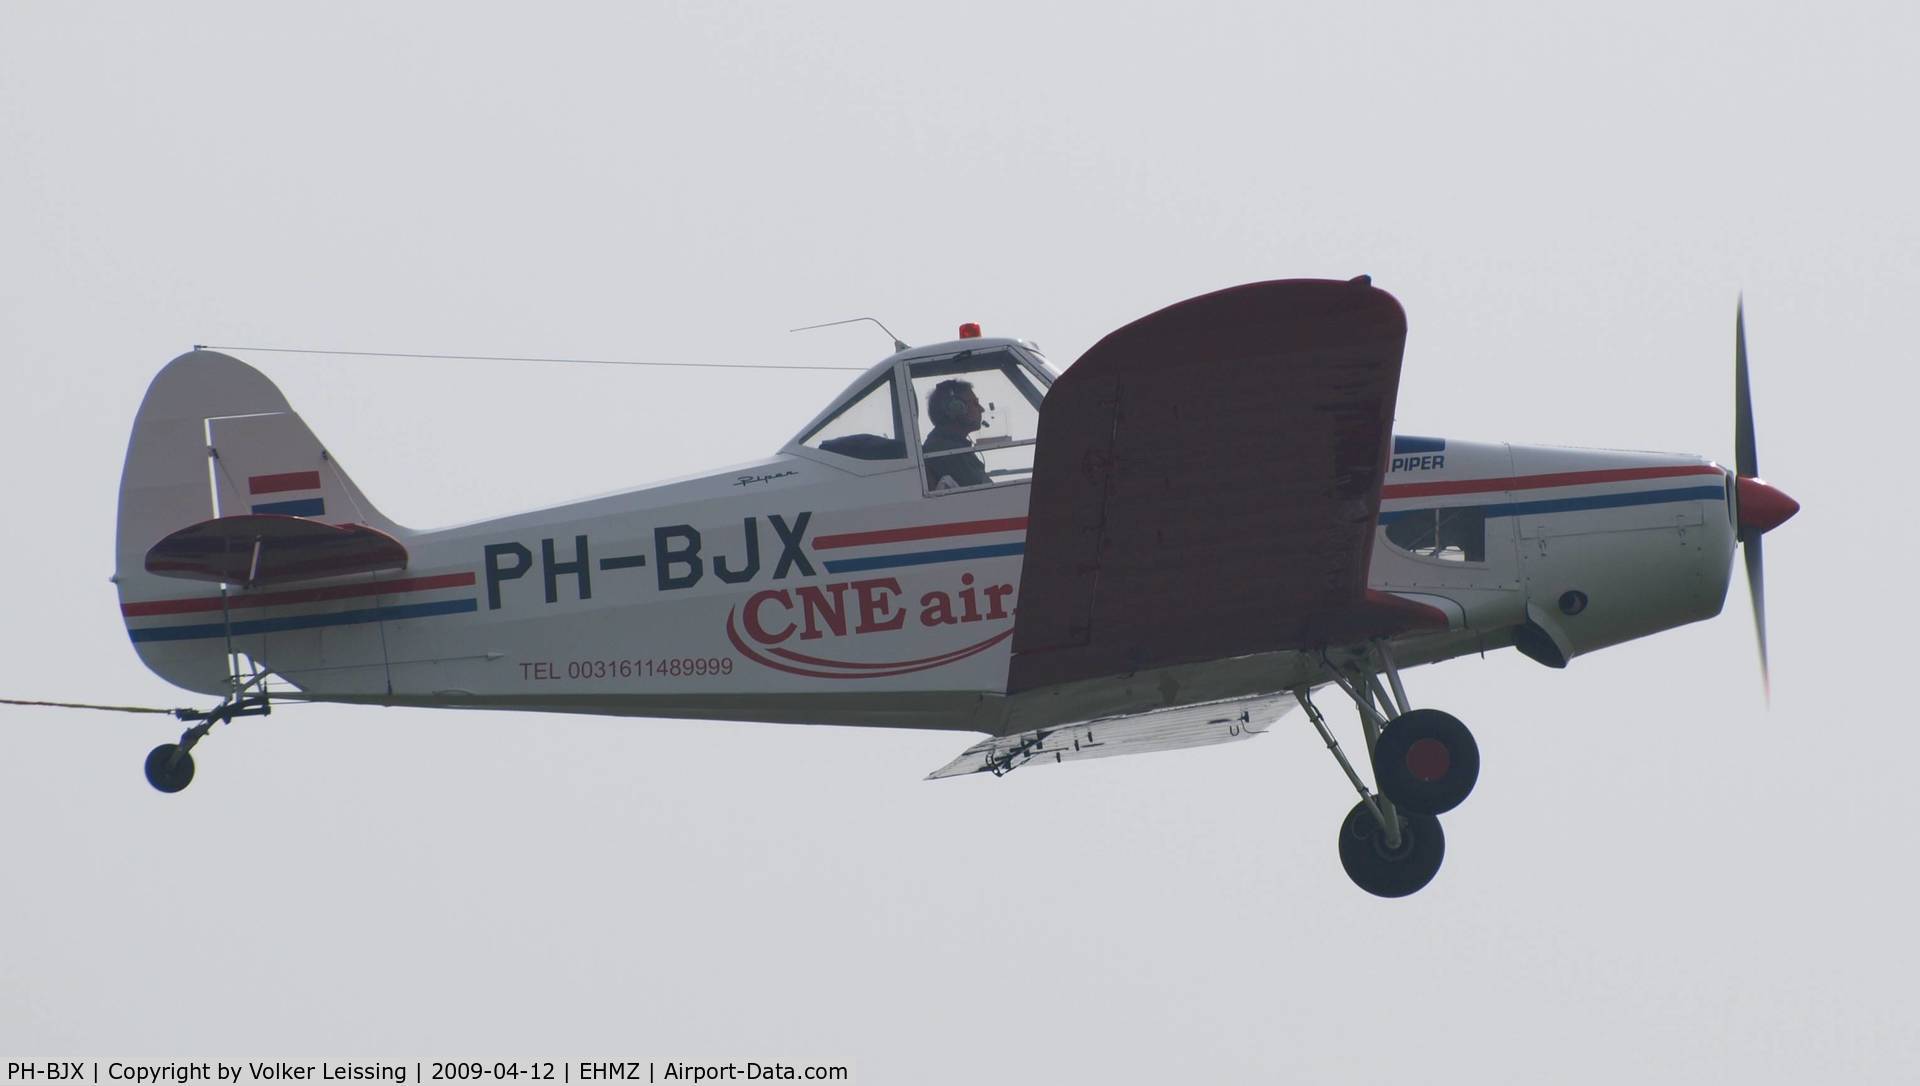 PH-BJX, 1964 Piper PA 25-235 Pawnee B C/N 25-2592, departing